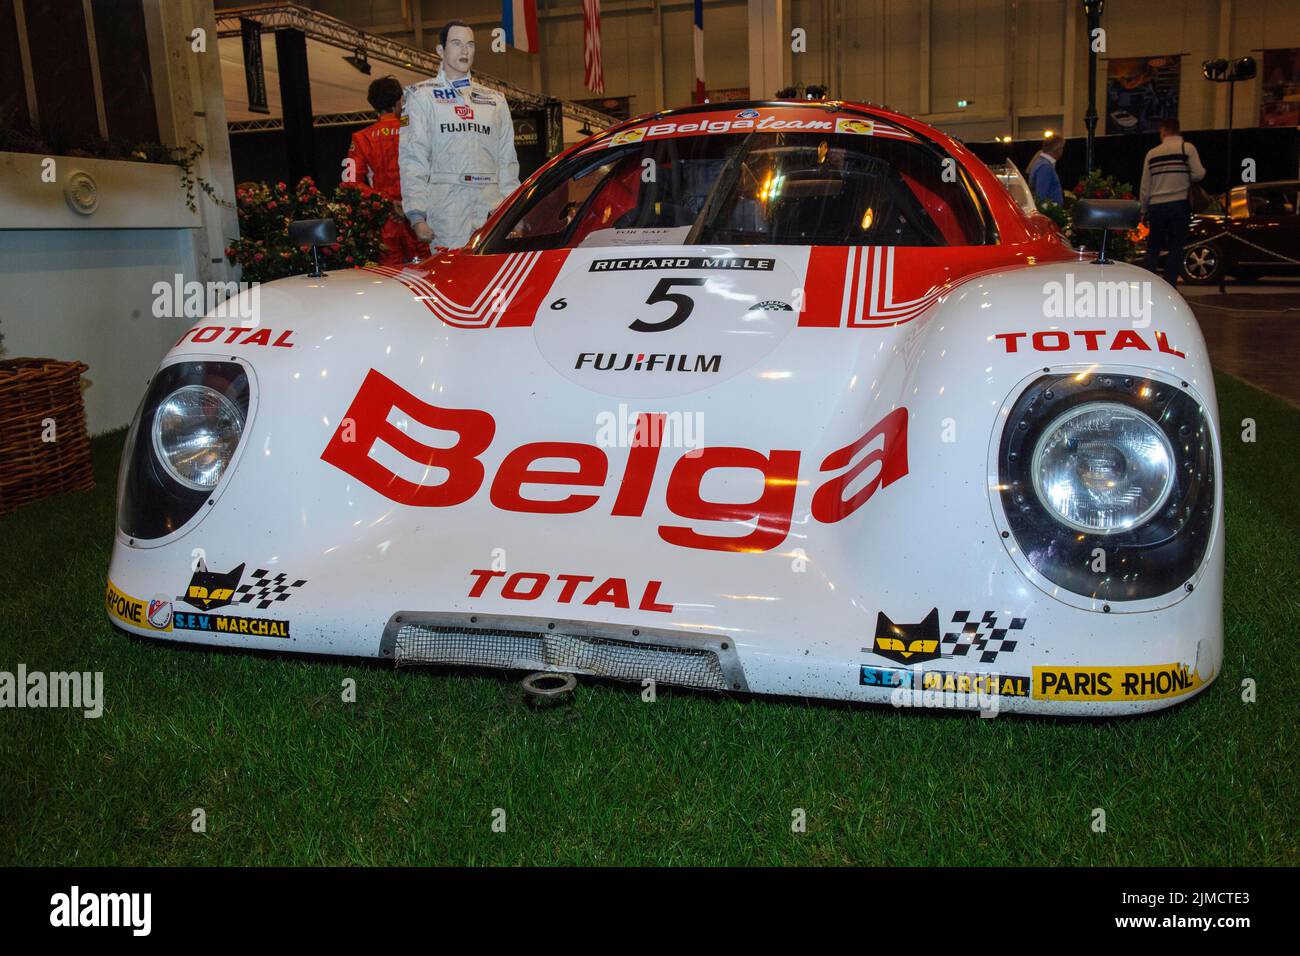 Voiture de course classique historique Rondeau M378 victoire globale 24h le Mans 1978, course de 24 heures du Mans, foire Techno Classica, Essen, Nord Banque D'Images